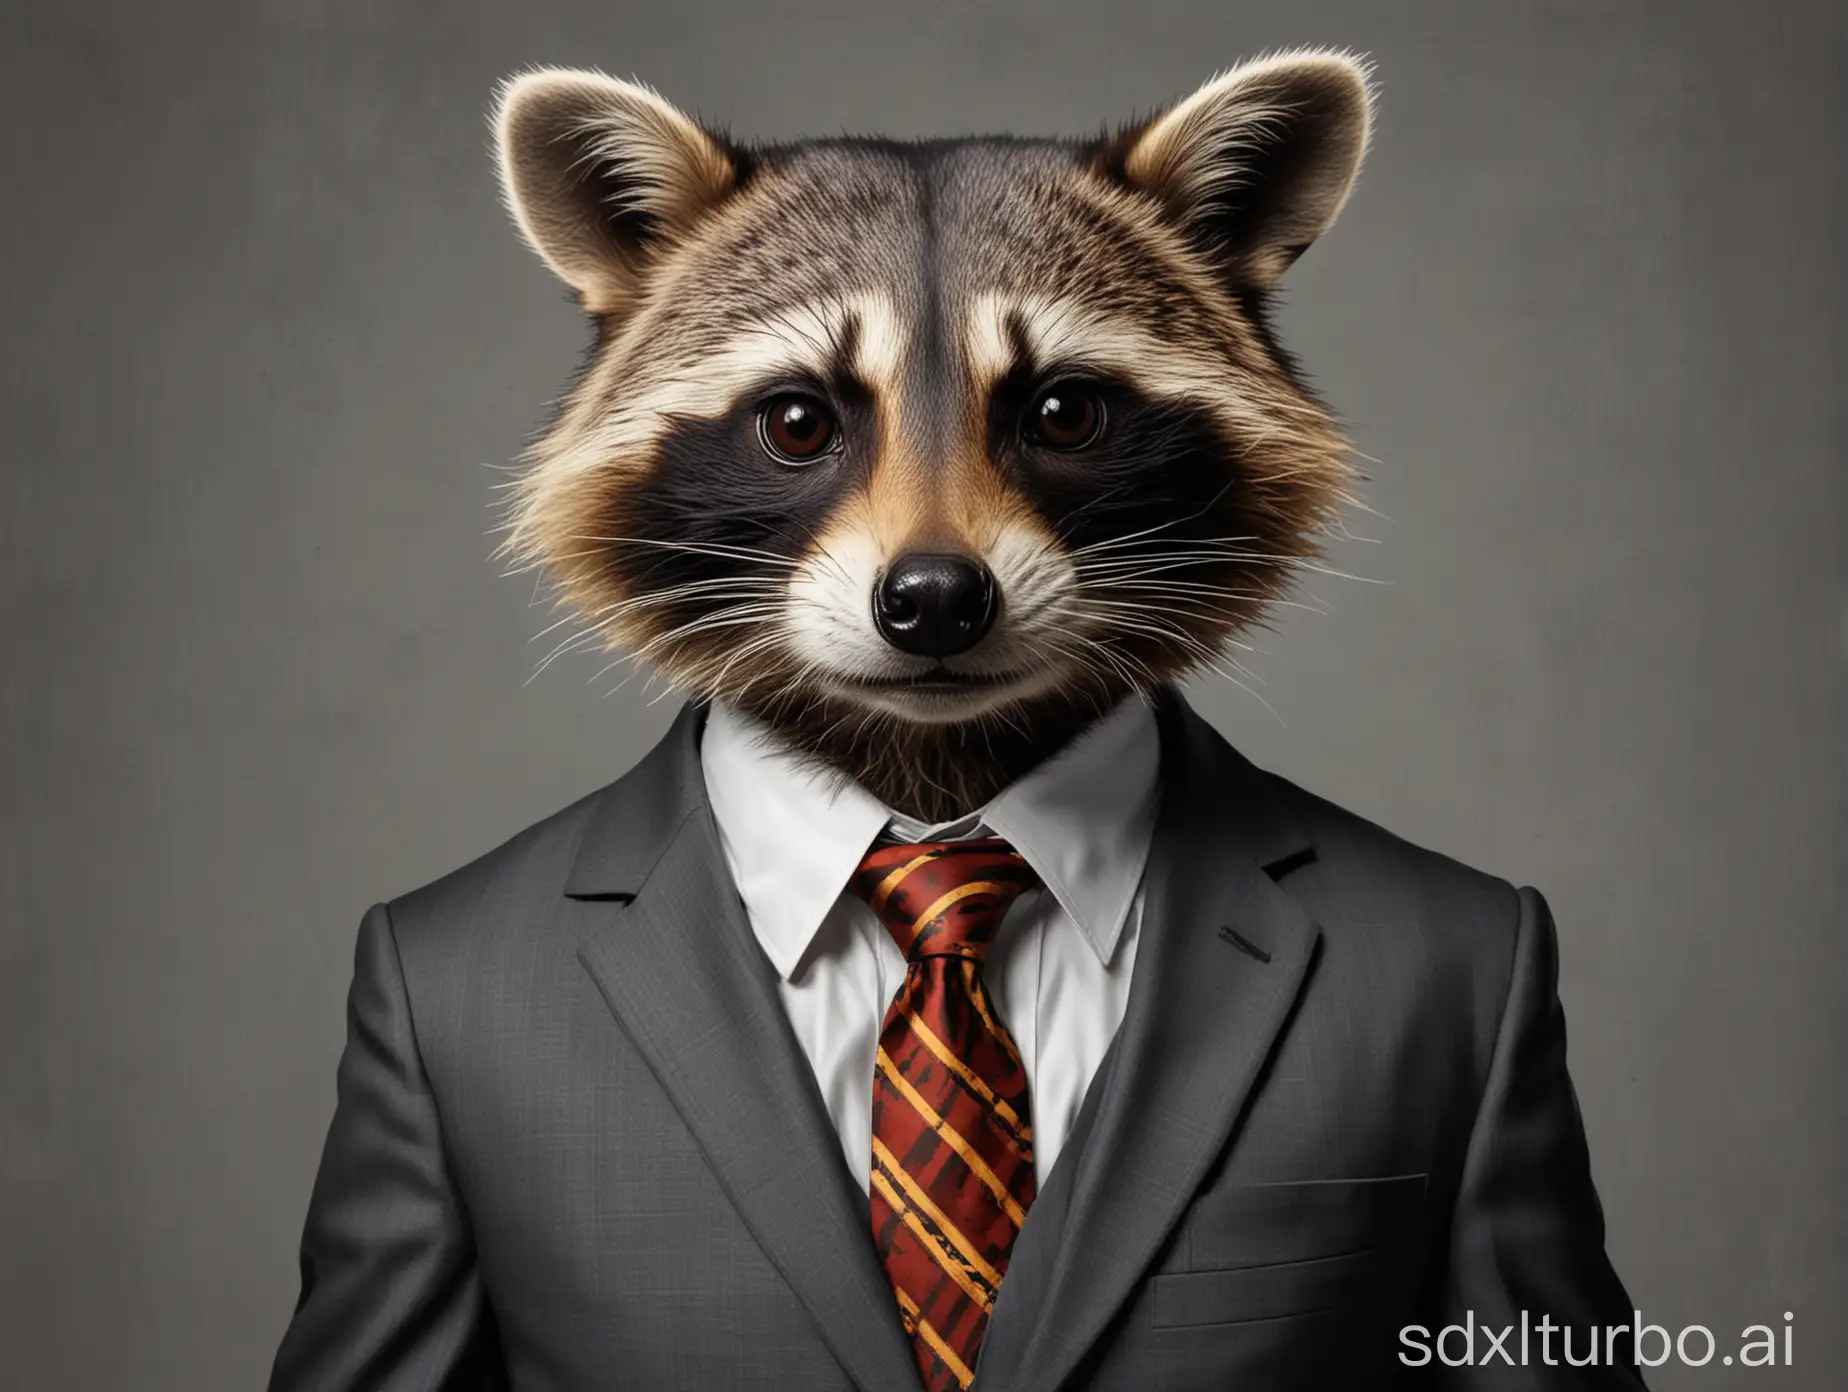 raccoon pop art in suit